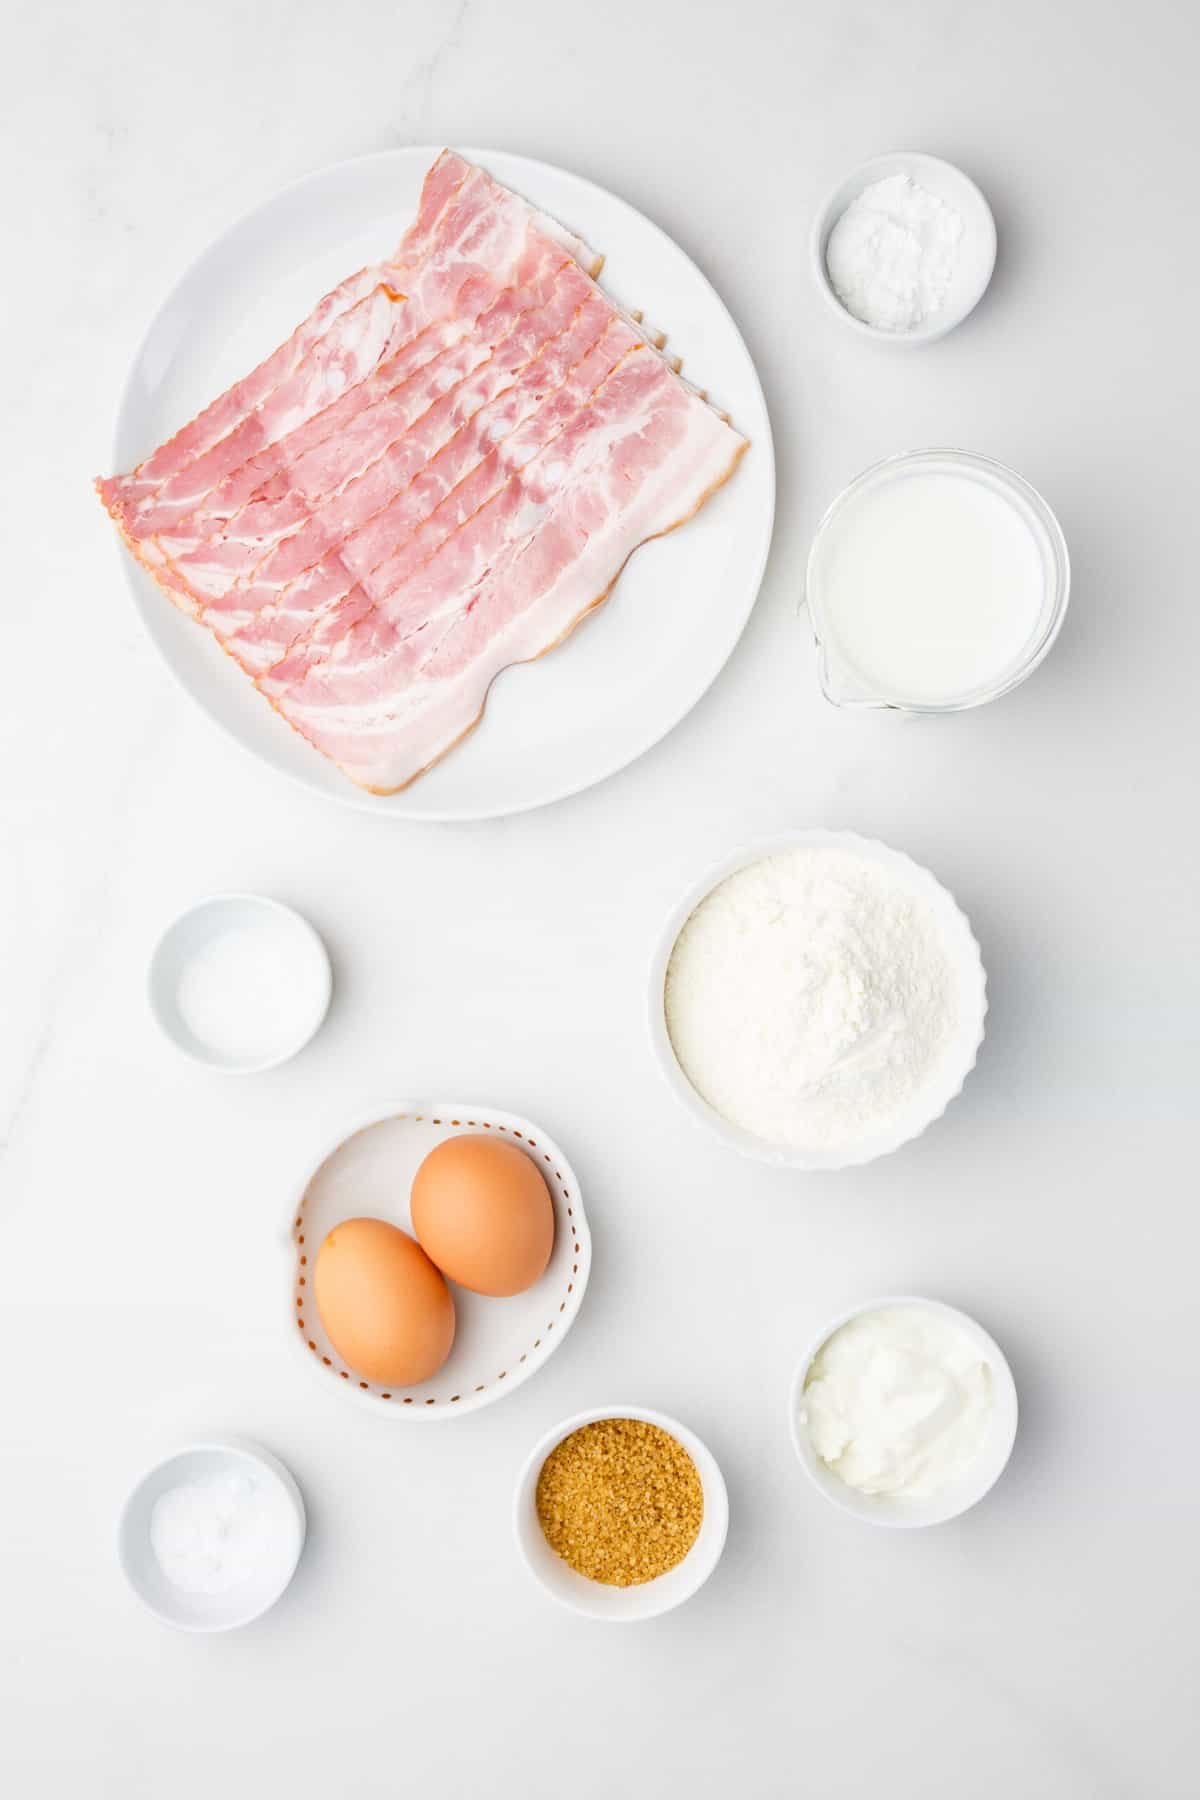 ingredients to make bacon pancakes